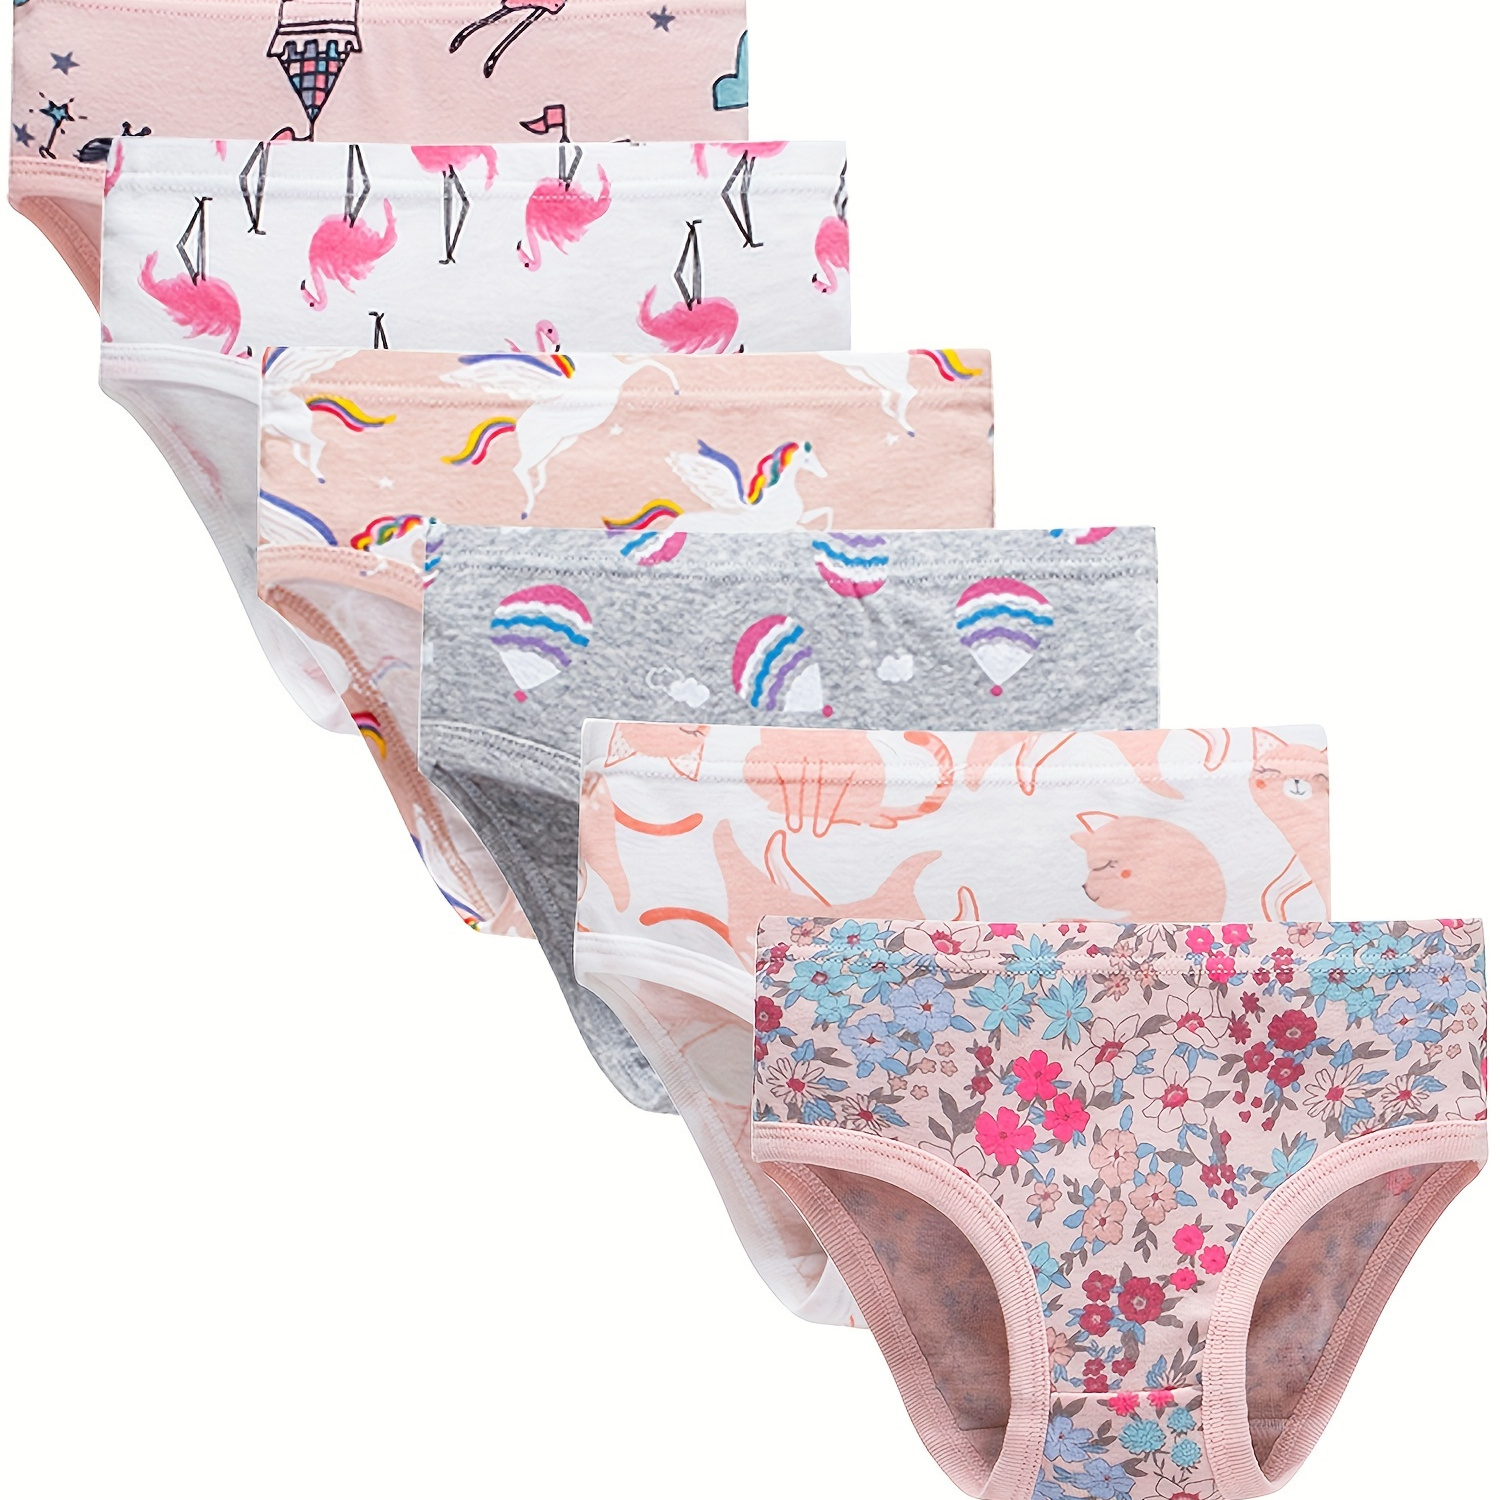 

6 Pack Little Girls' Soft Cotton Underwear Kids Cool Breathable Comfort Panty Briefs Toddler Undies